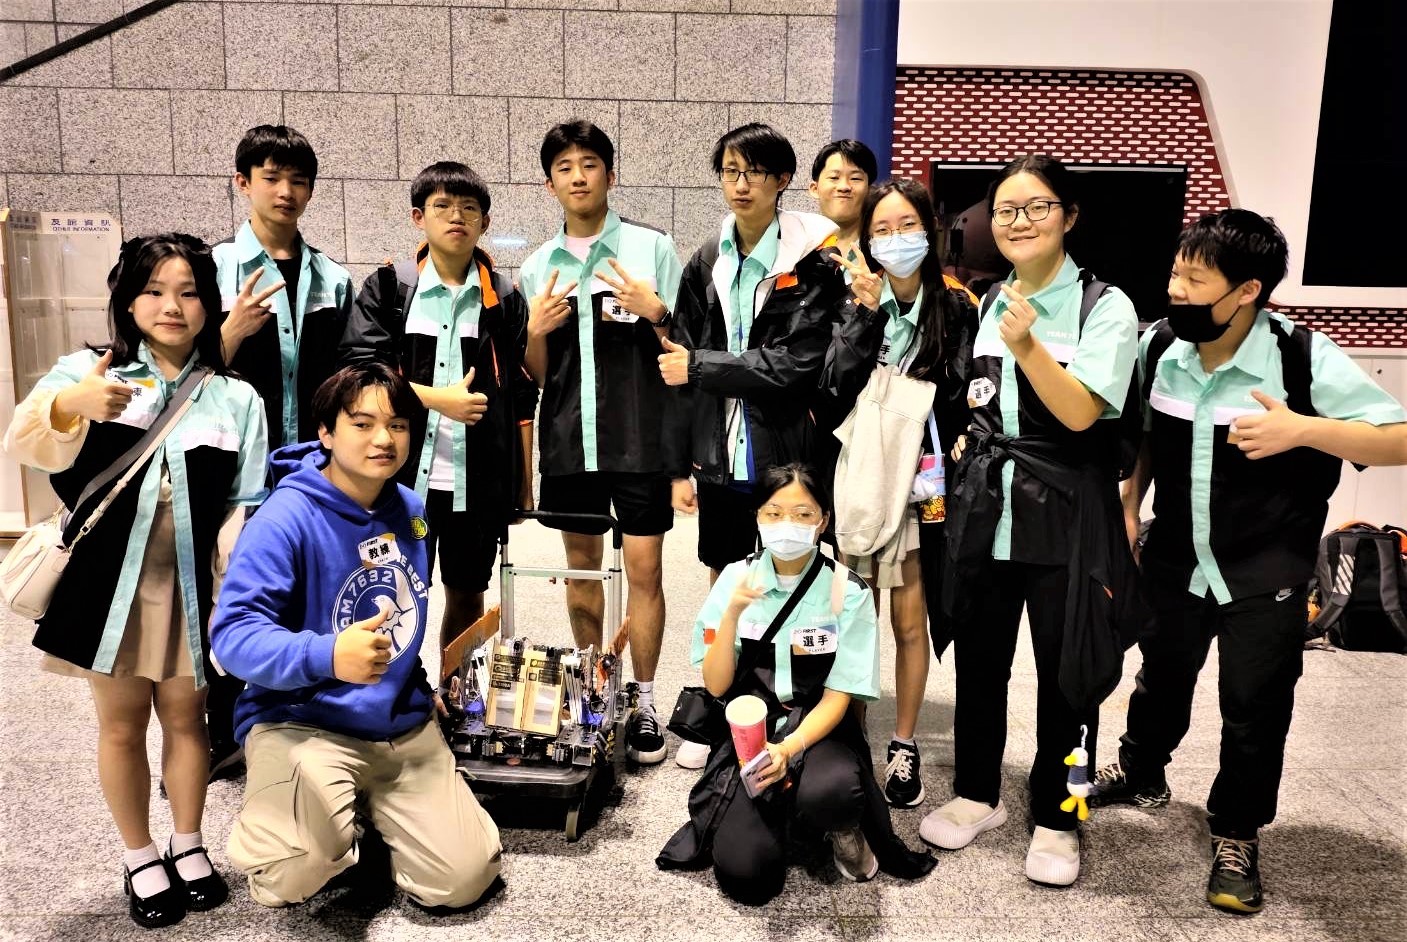 新北安康高中首次參賽FTC機器人競賽勇奪聯盟冠軍